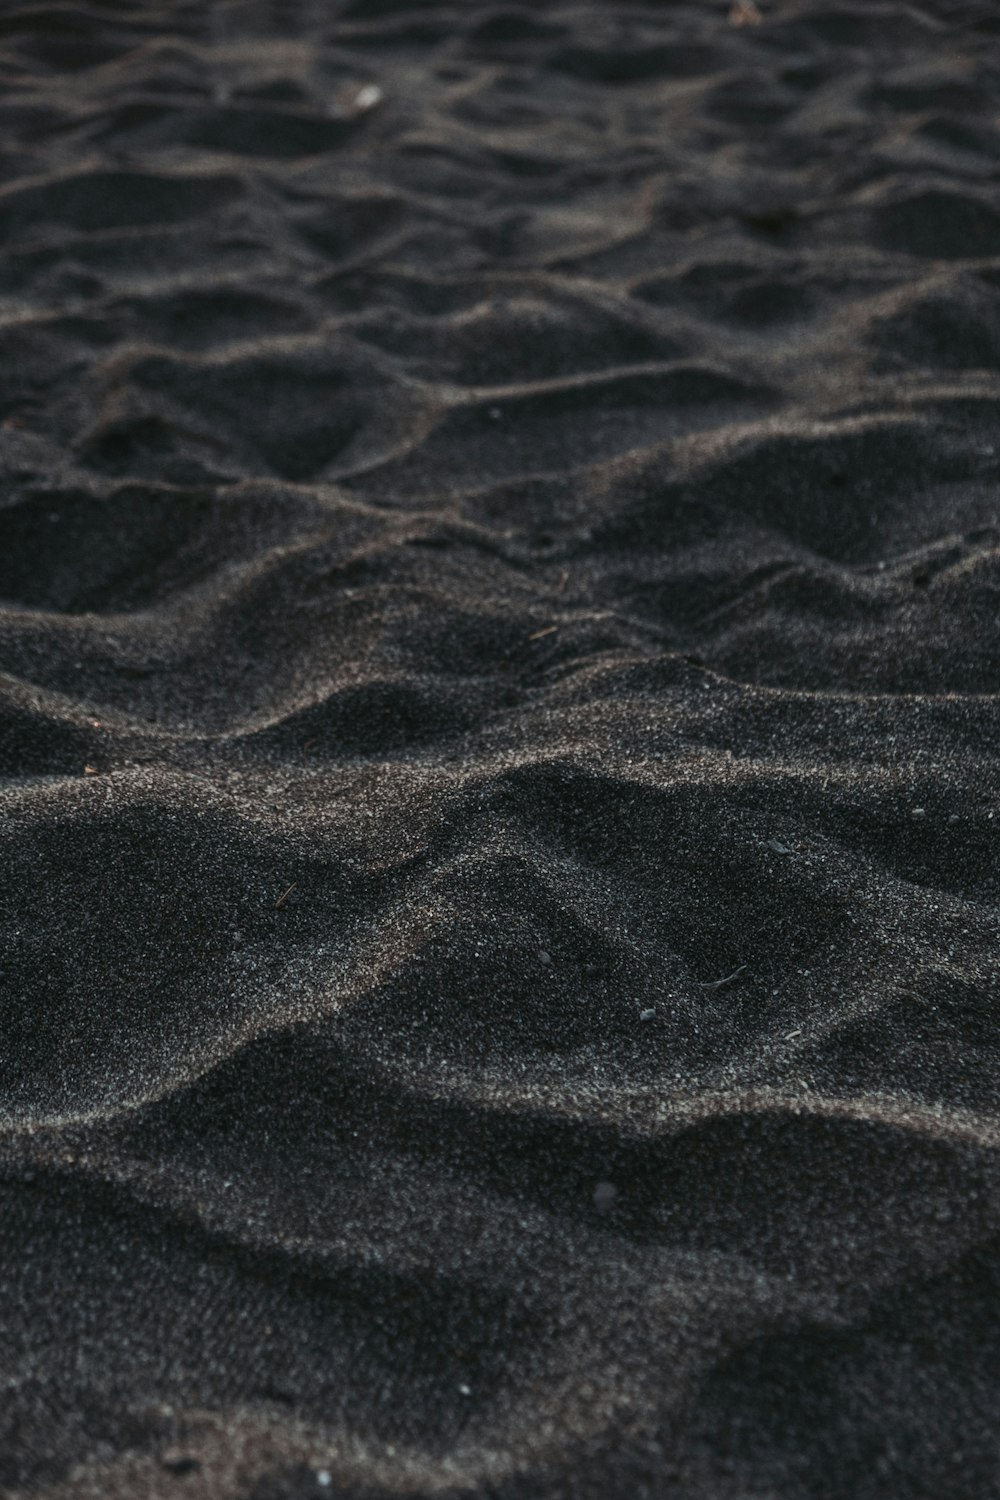 areia marrom com gotículas de água